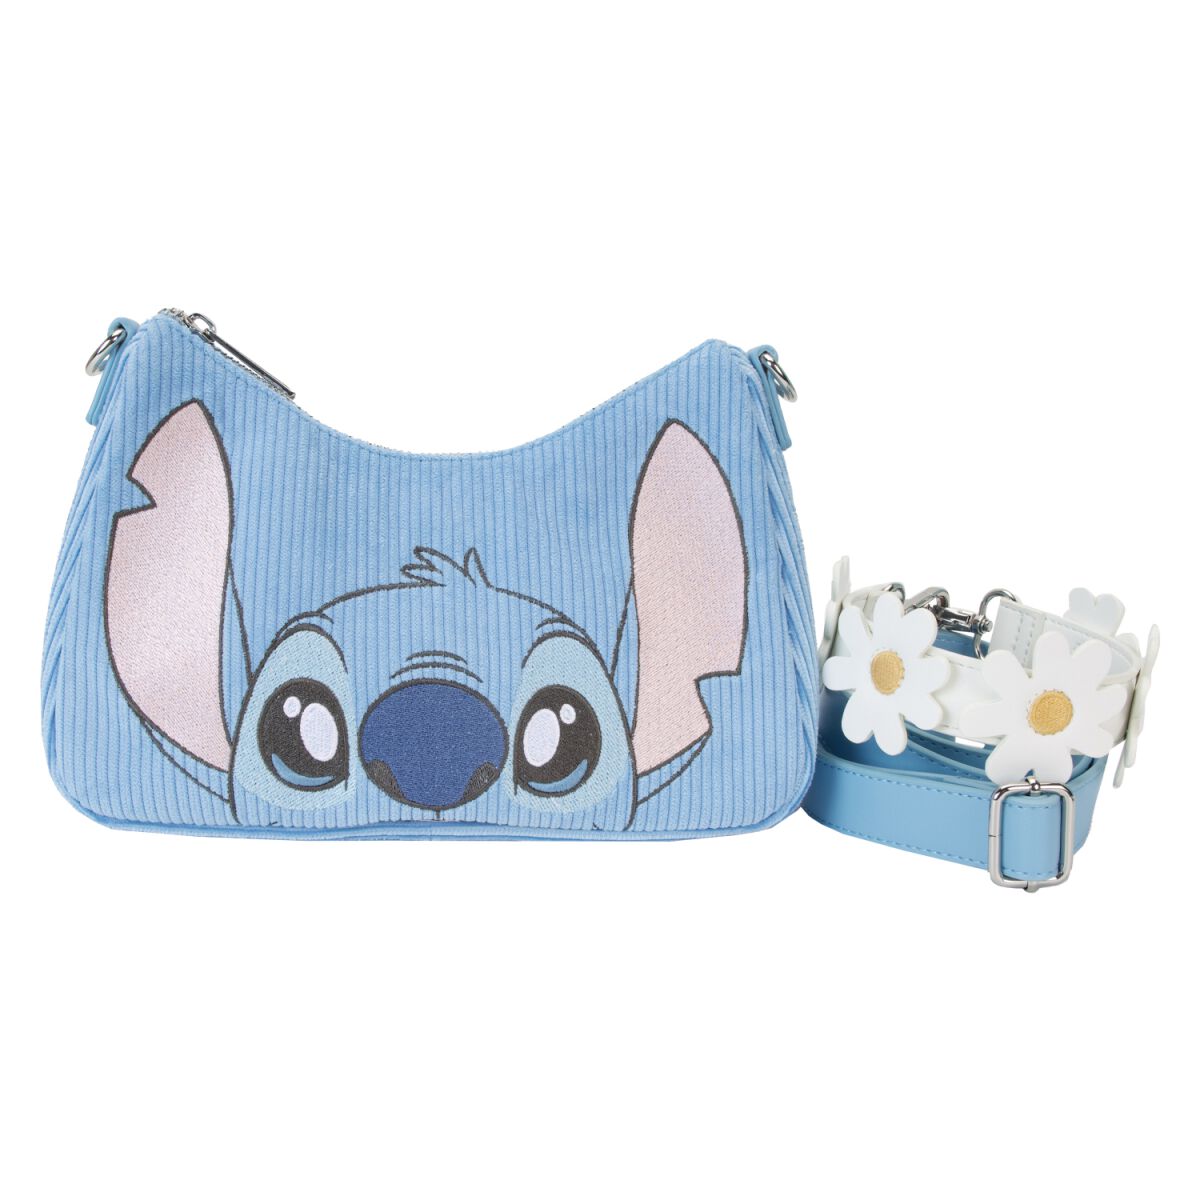 Lilo & Stitch - Disney Handtasche - Loungefly - Springtime Stitch - für Damen - multicolor  - Lizenzierter Fanartikel